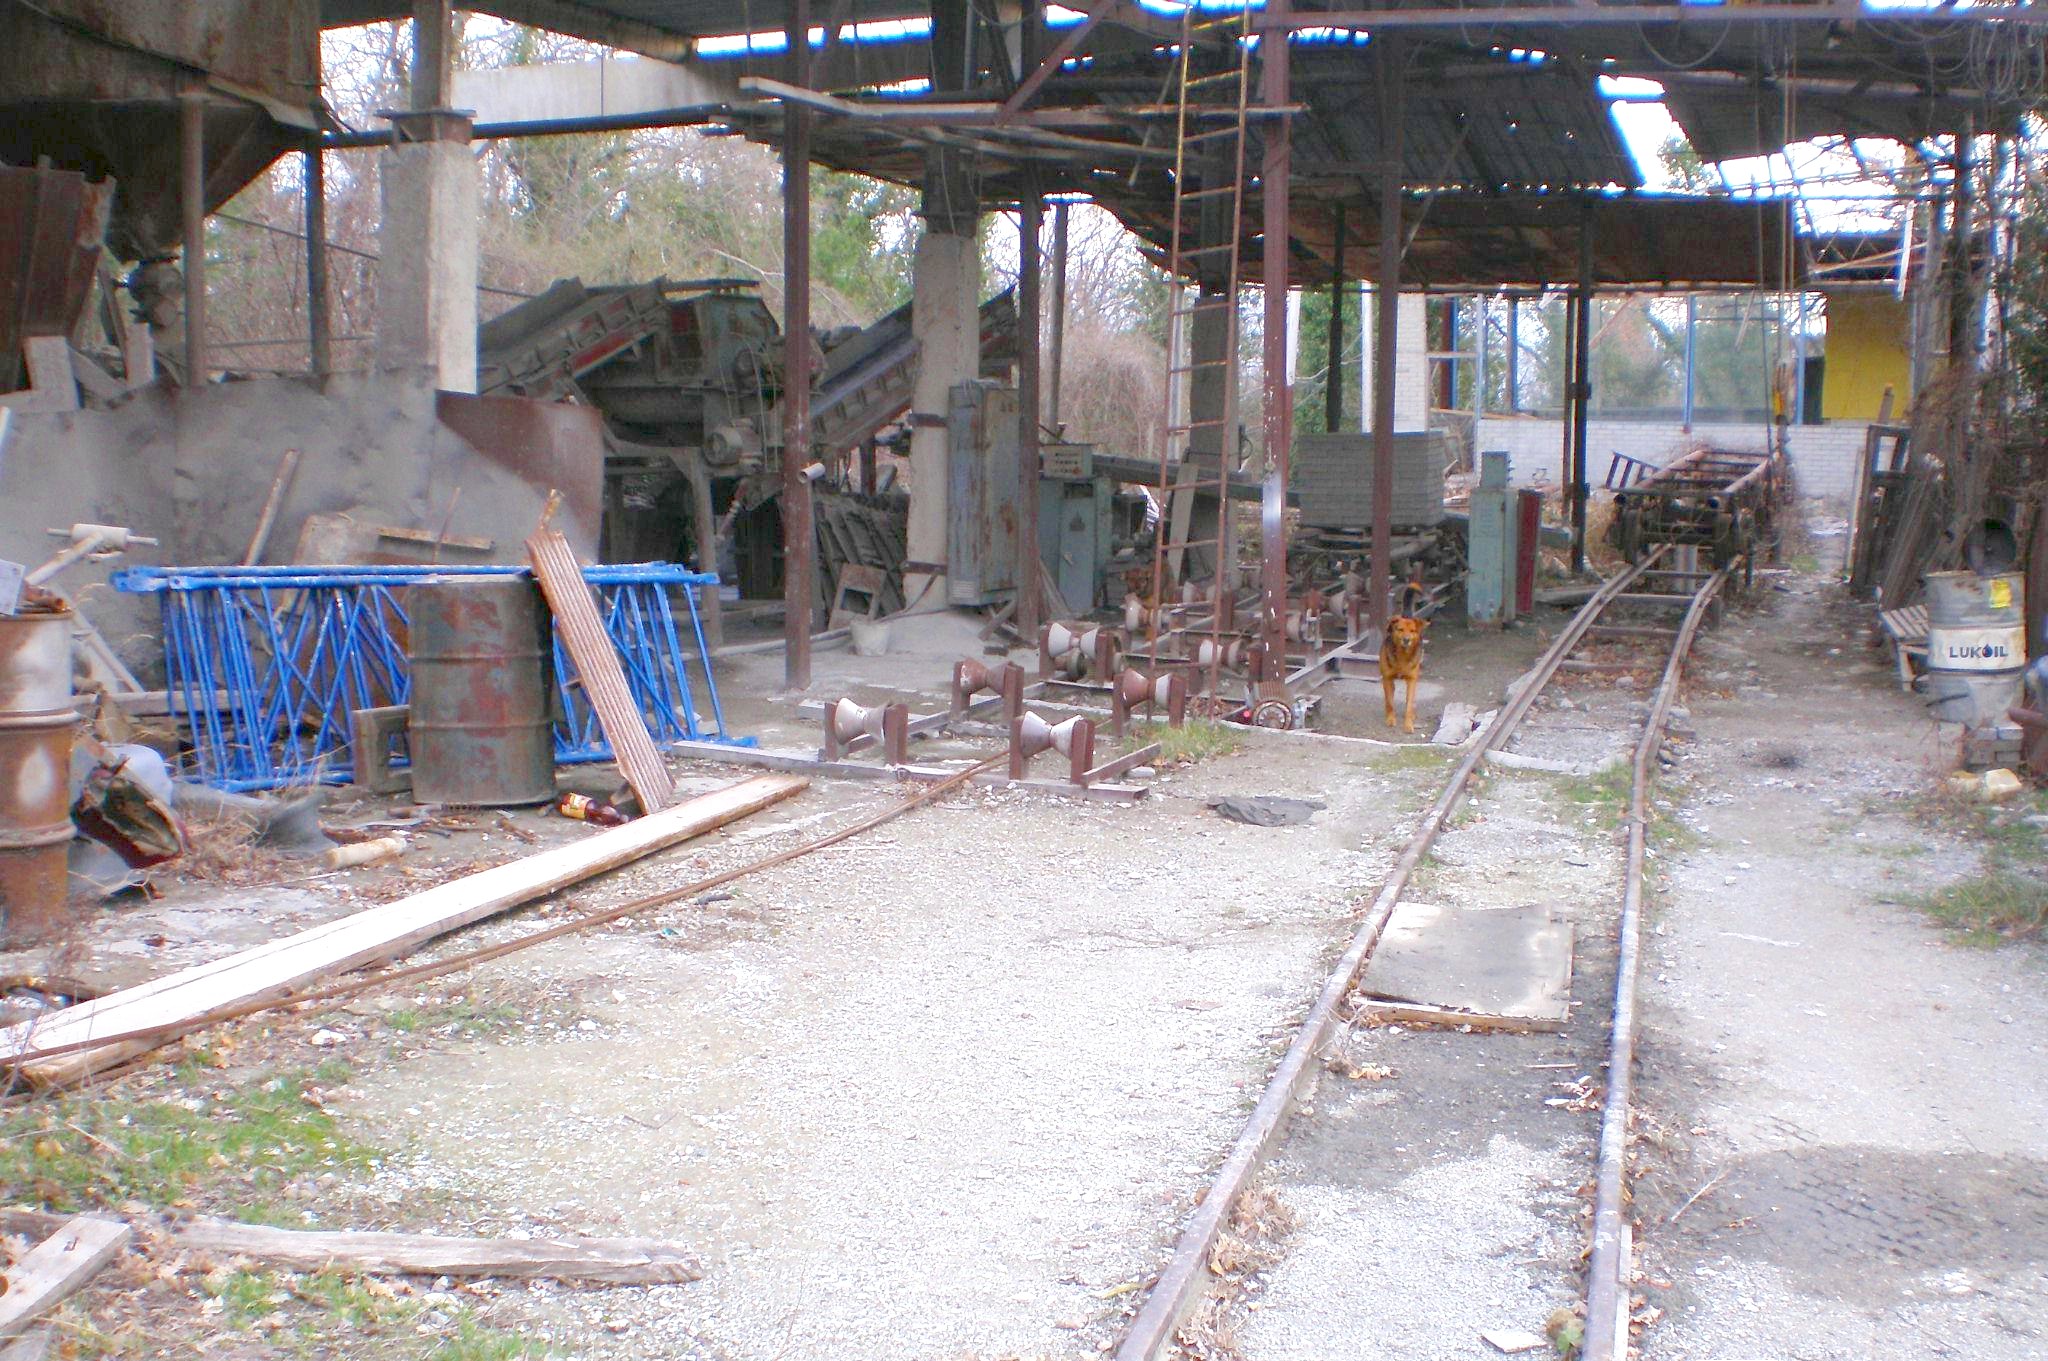 Узкоколейная железная дорога производственного кооператива «Вертикаль» (город Геленджик)  — фотографии, сделанные в 2008 году (часть 1)